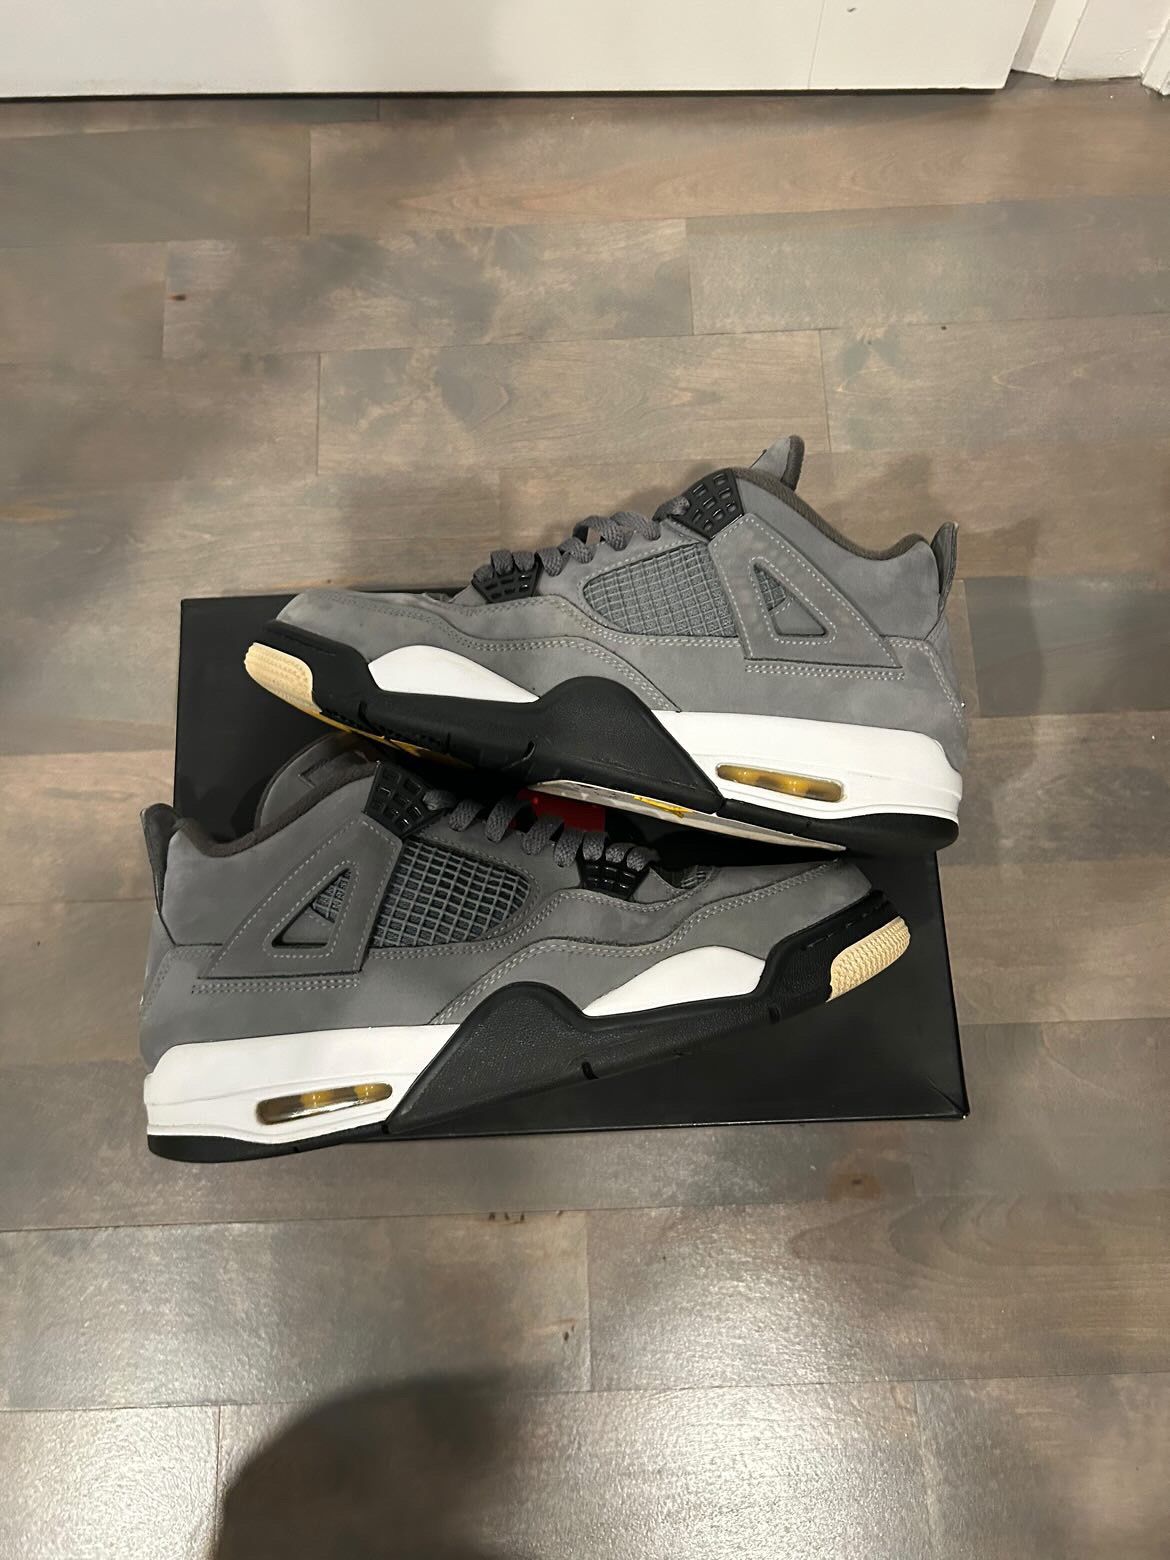 Pre-owned Jordan Nike Jordan 4 Retro “cool Grey” (2019) Shoes